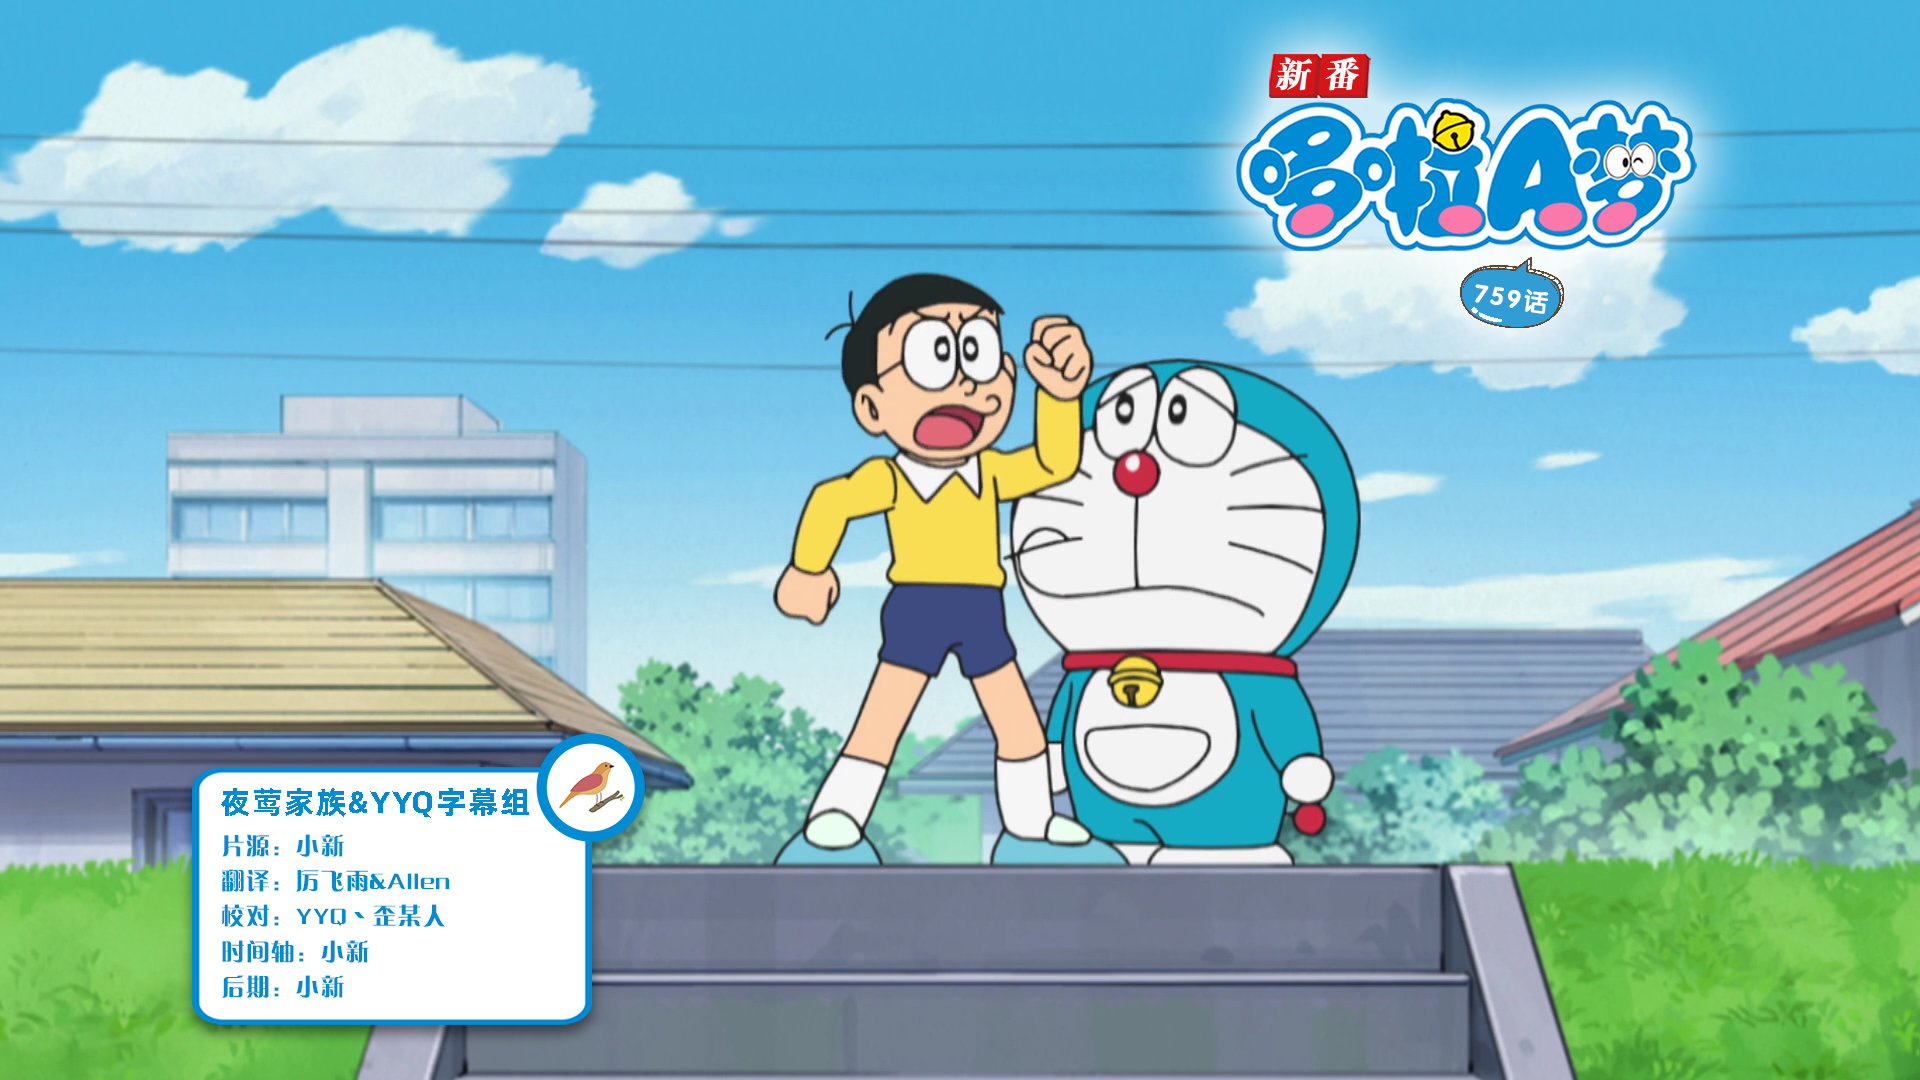 [夜莺家族&YYQ字幕组]New Doraemon 哆啦A梦新番[759][2023.05.20][AVC][1080P][GB_JP]插图icecomic动漫-云之彼端,约定的地方(´･ᴗ･`)2